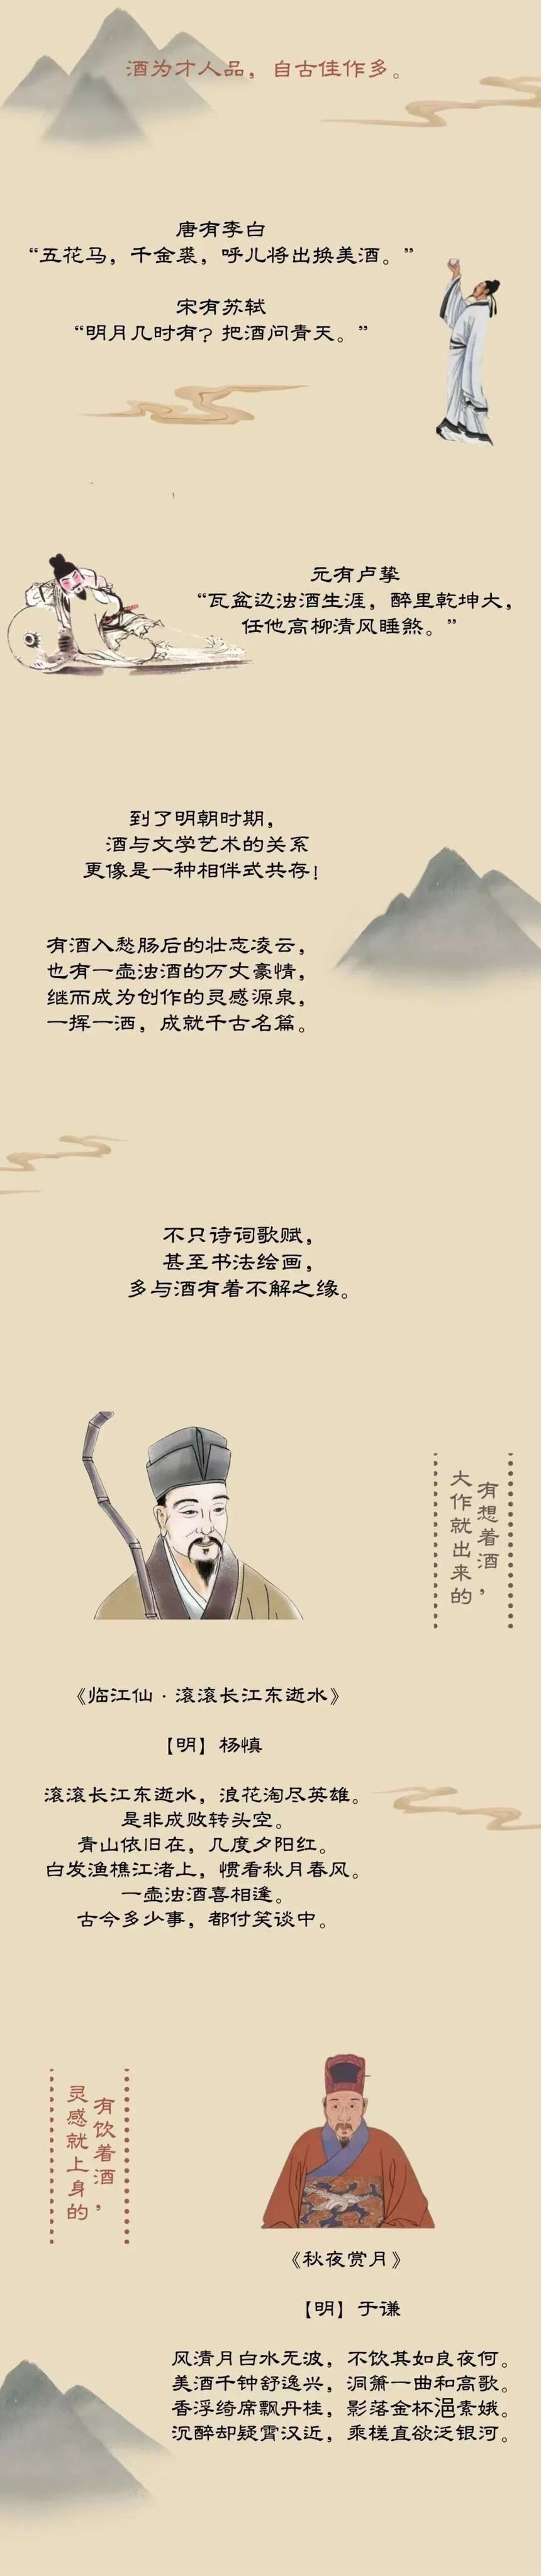 酒在中国历史中地位到底有多高